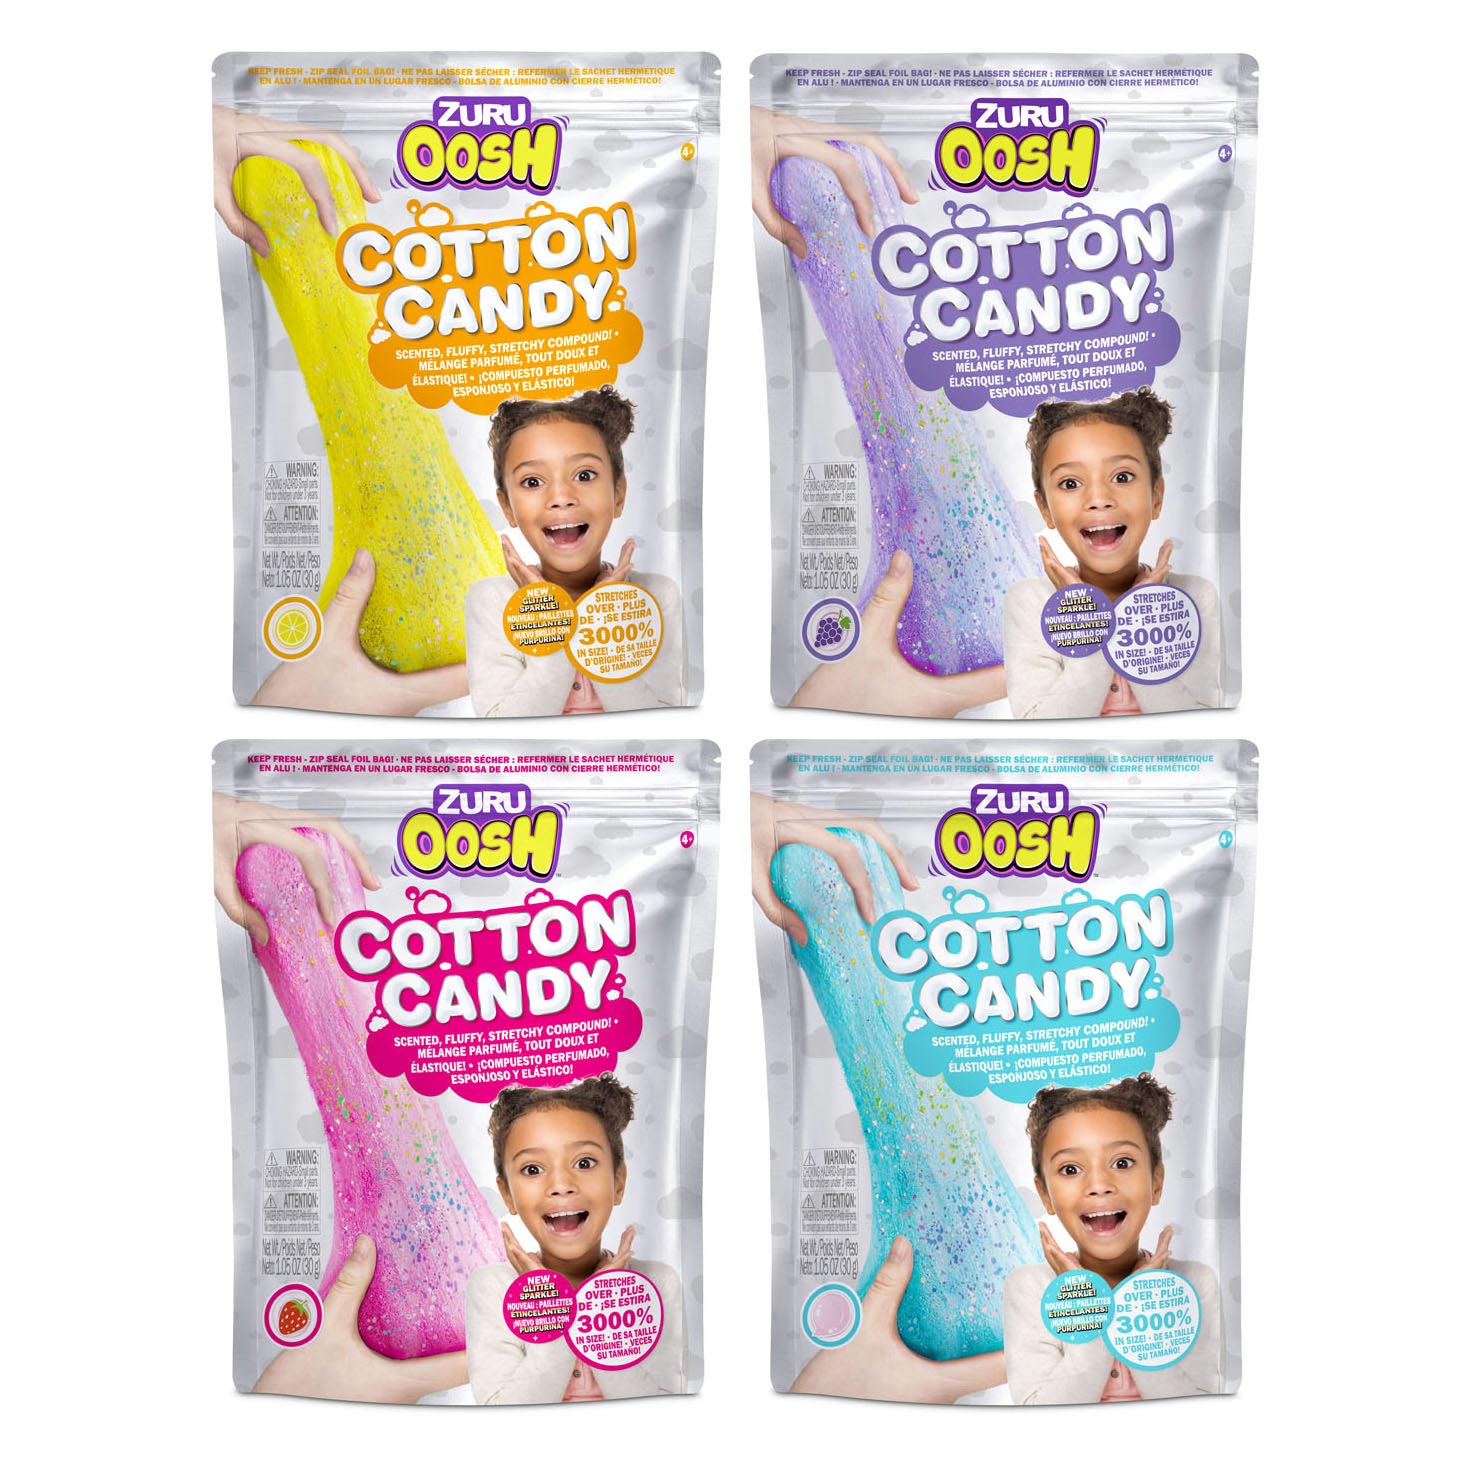 ZURU Oosh Cotton Candy